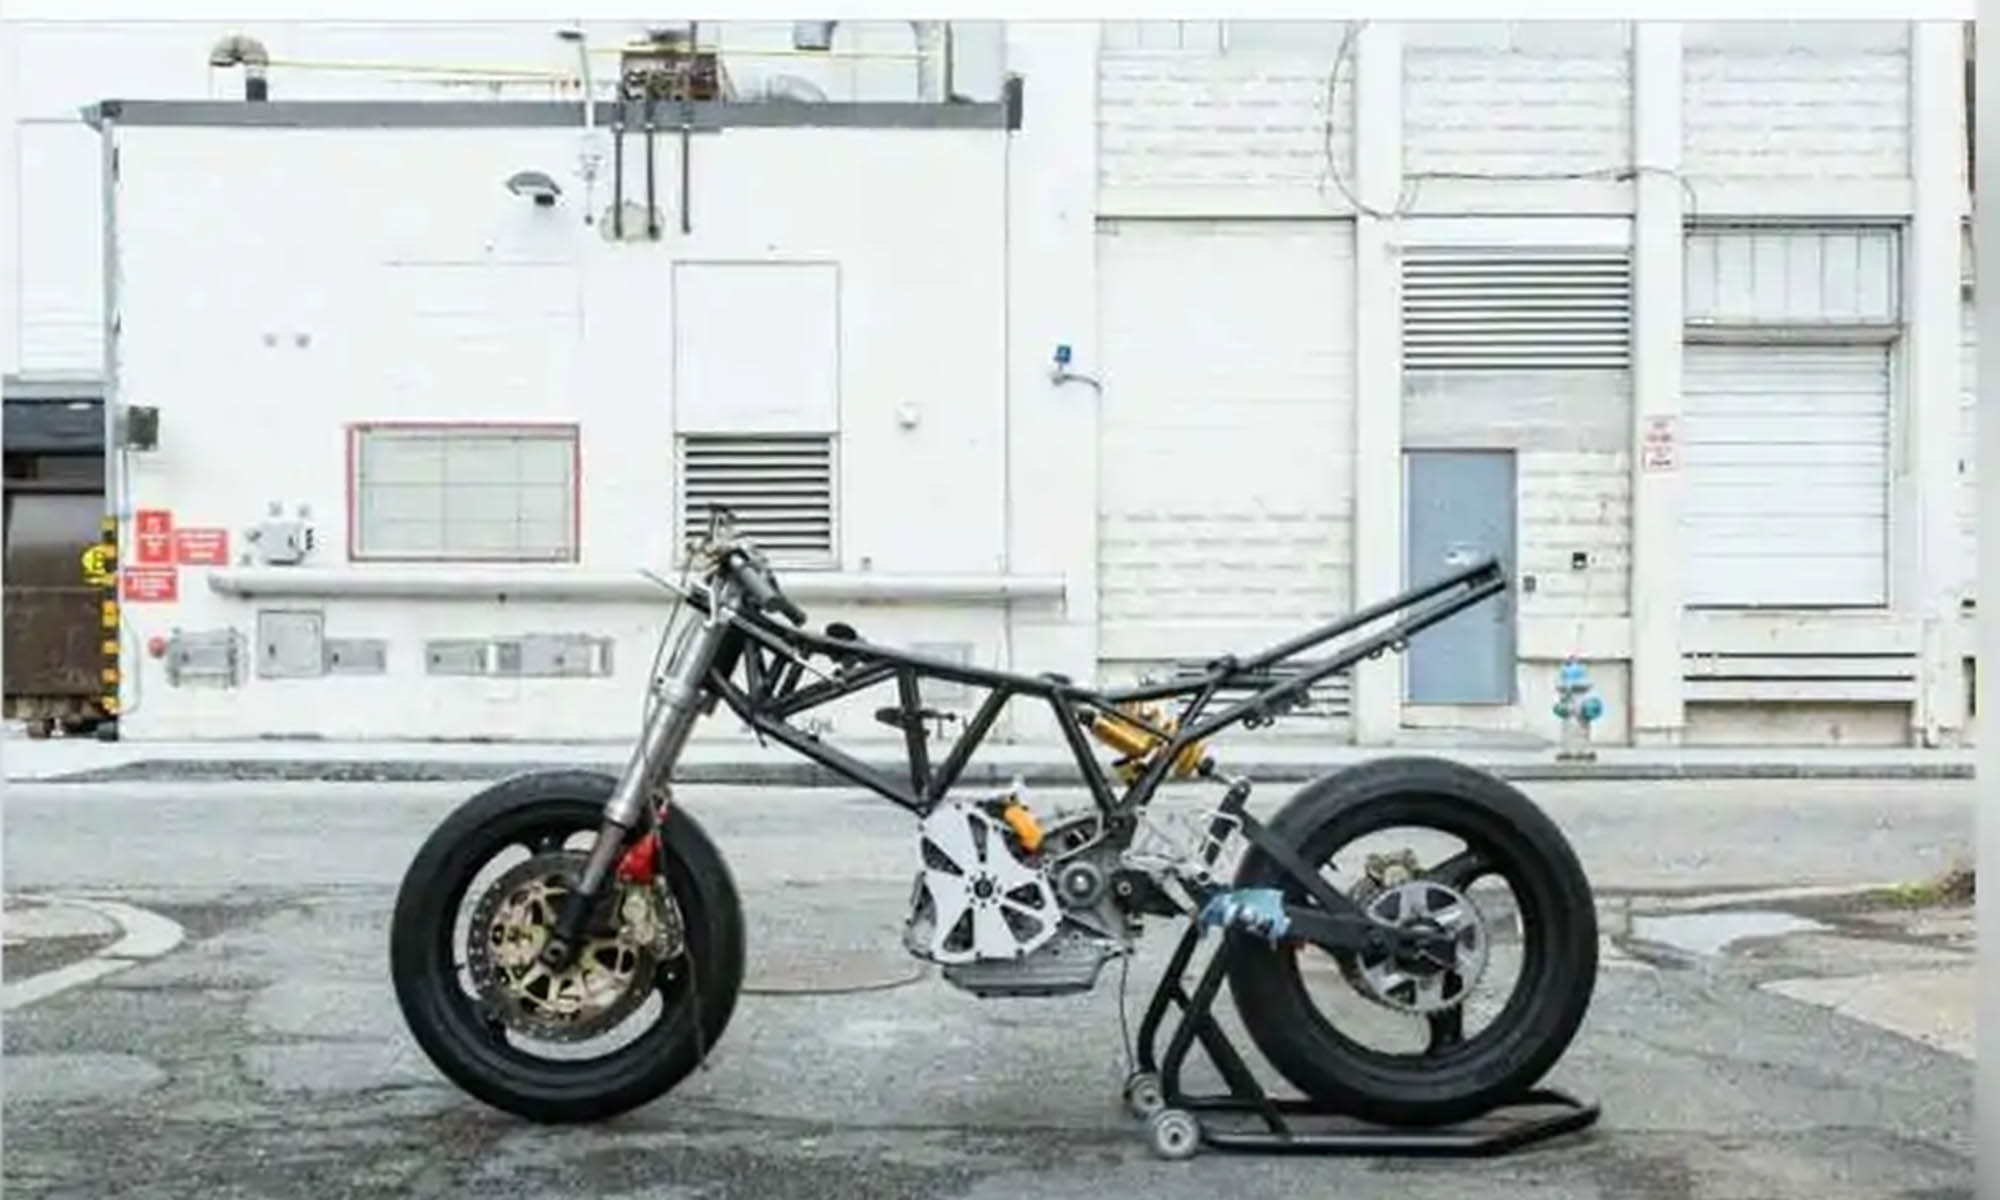 El proyecto de motocicleta del MIT utilizará un módulo de hidrógeno de Doosan Mobility Innovation ya desarrollado para otras aplicaciones. 